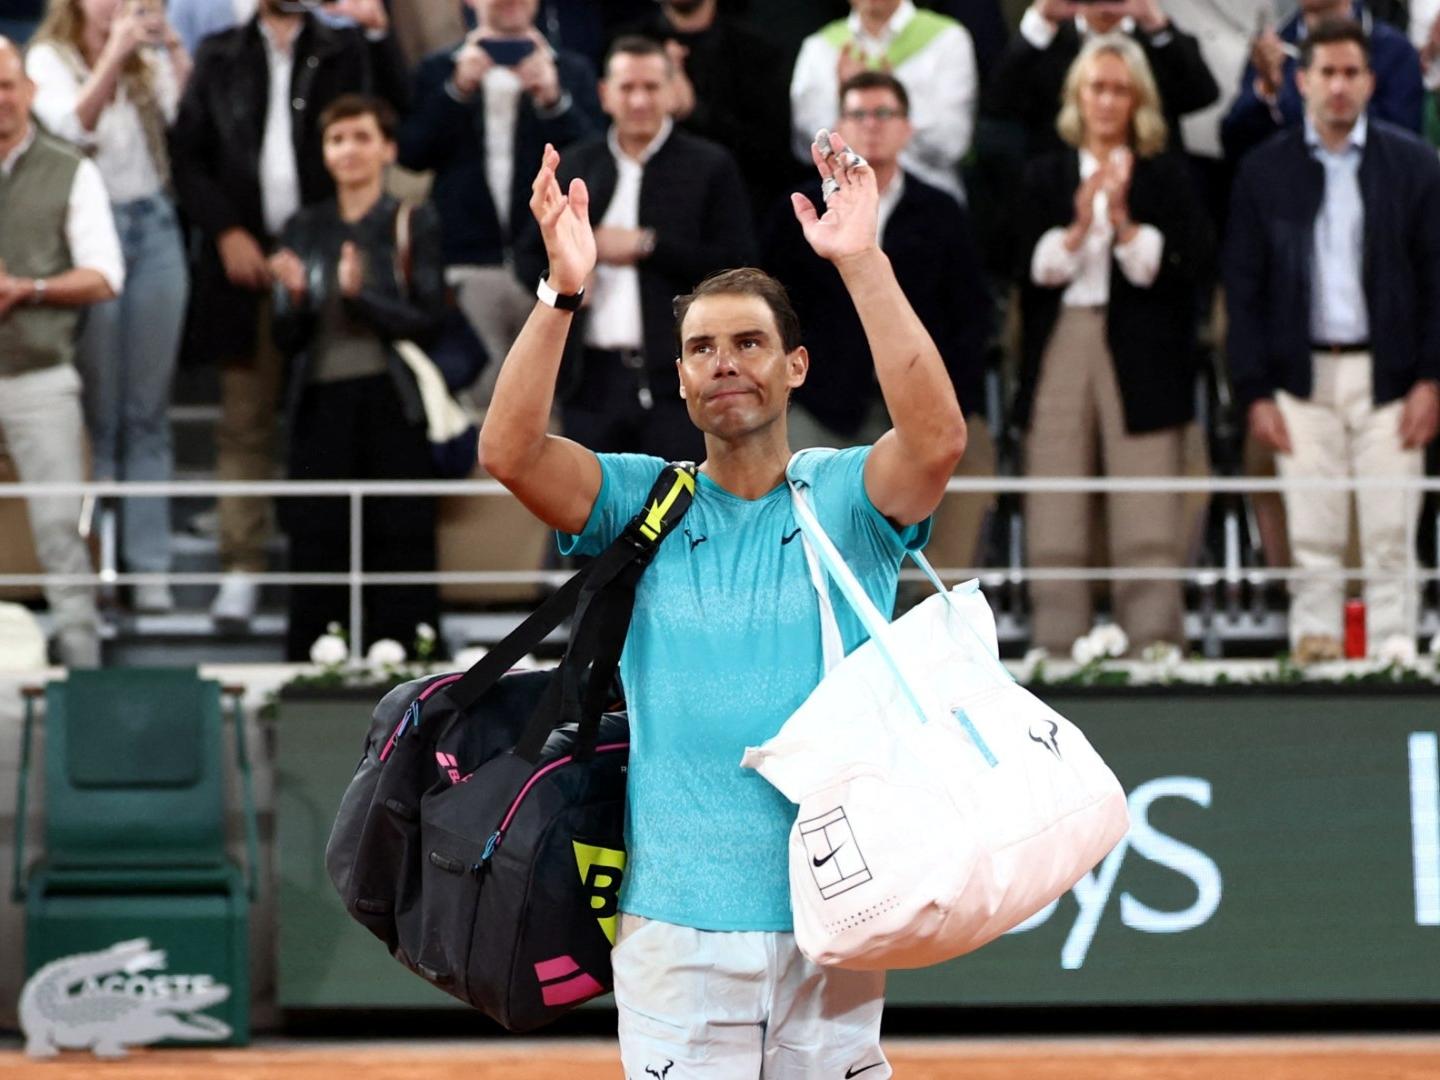 ¿El Adiós de Rafael Nadal? Tenista Se Despide de Roland Garros tras Derrota ante Zverev